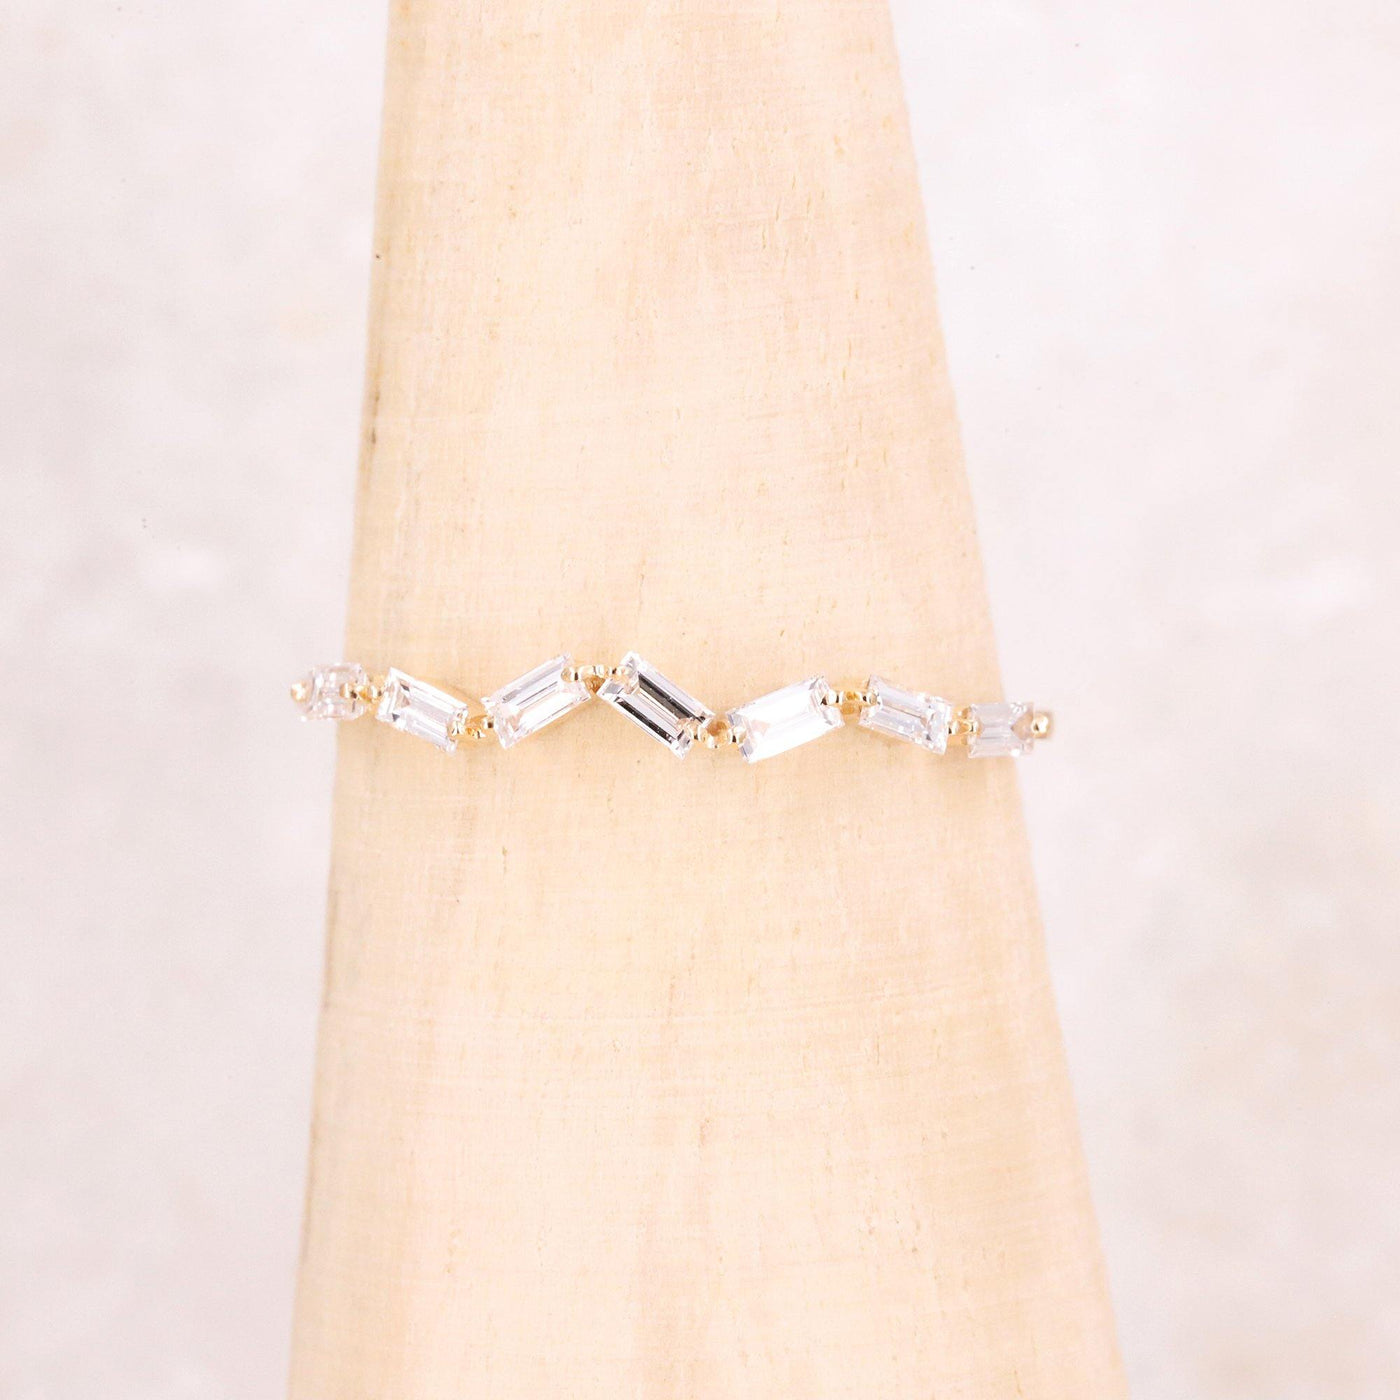 Baguette Diamond Ring | Baguette Engagement Ring | Promise Ring - Rubysta